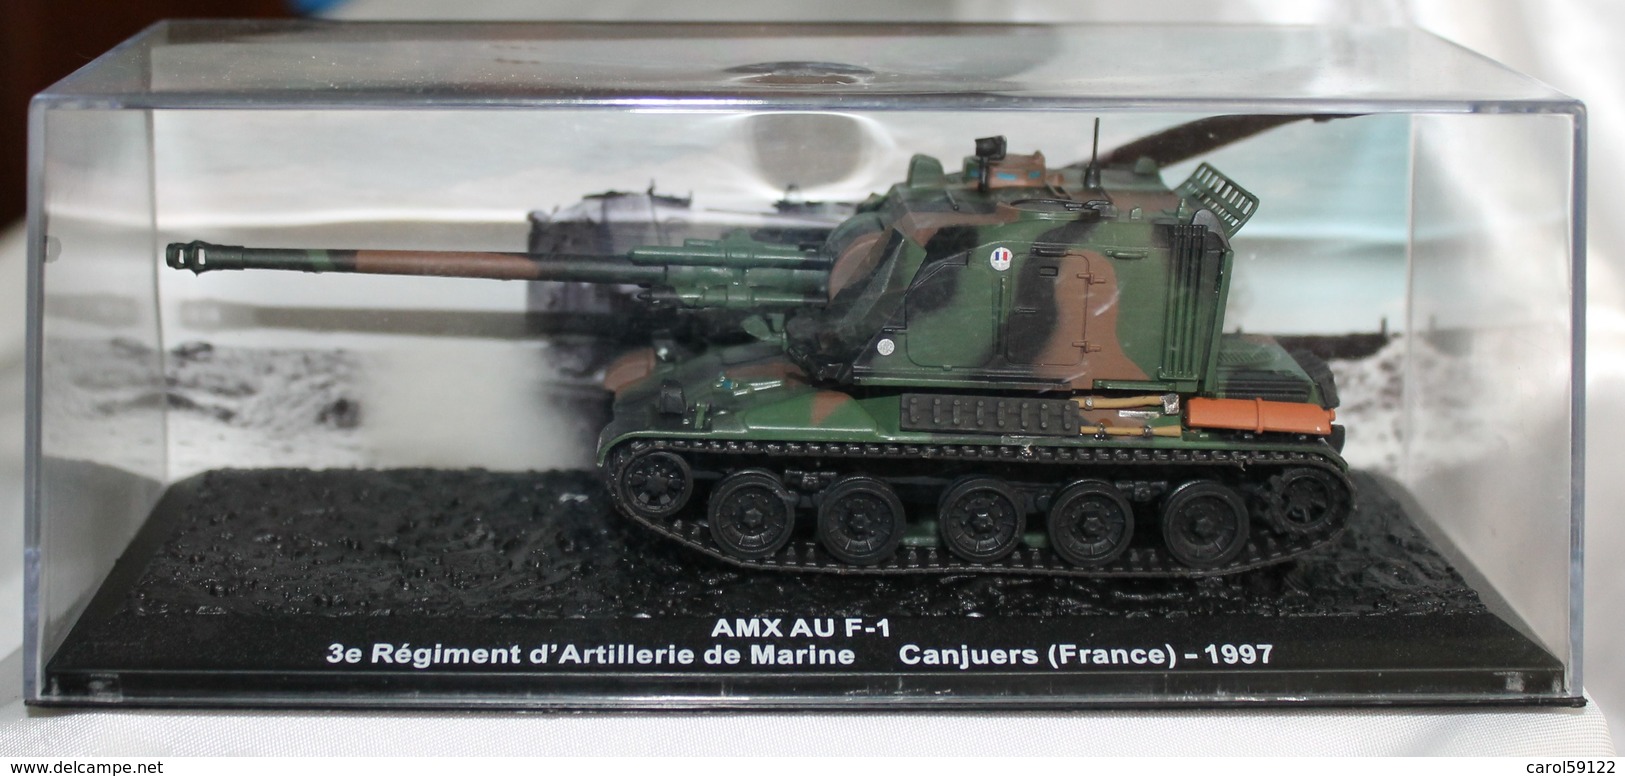 Maquette AMX AU F-1 1997 - Veicoli